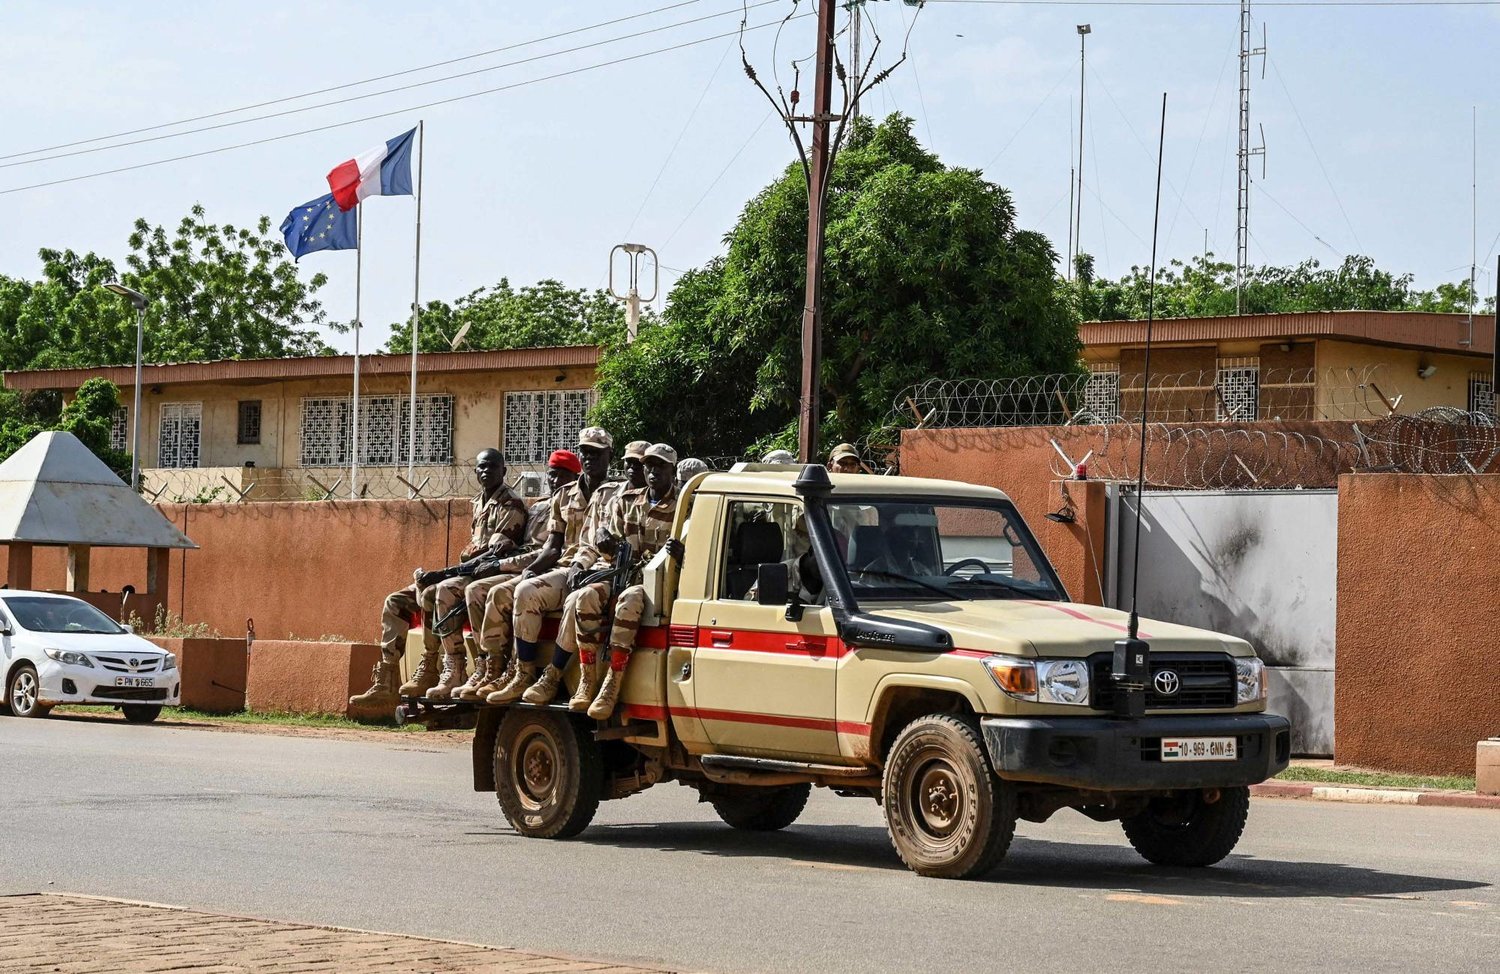 فرنسا تبدأ بمغادرة قواعدها في النيجر 